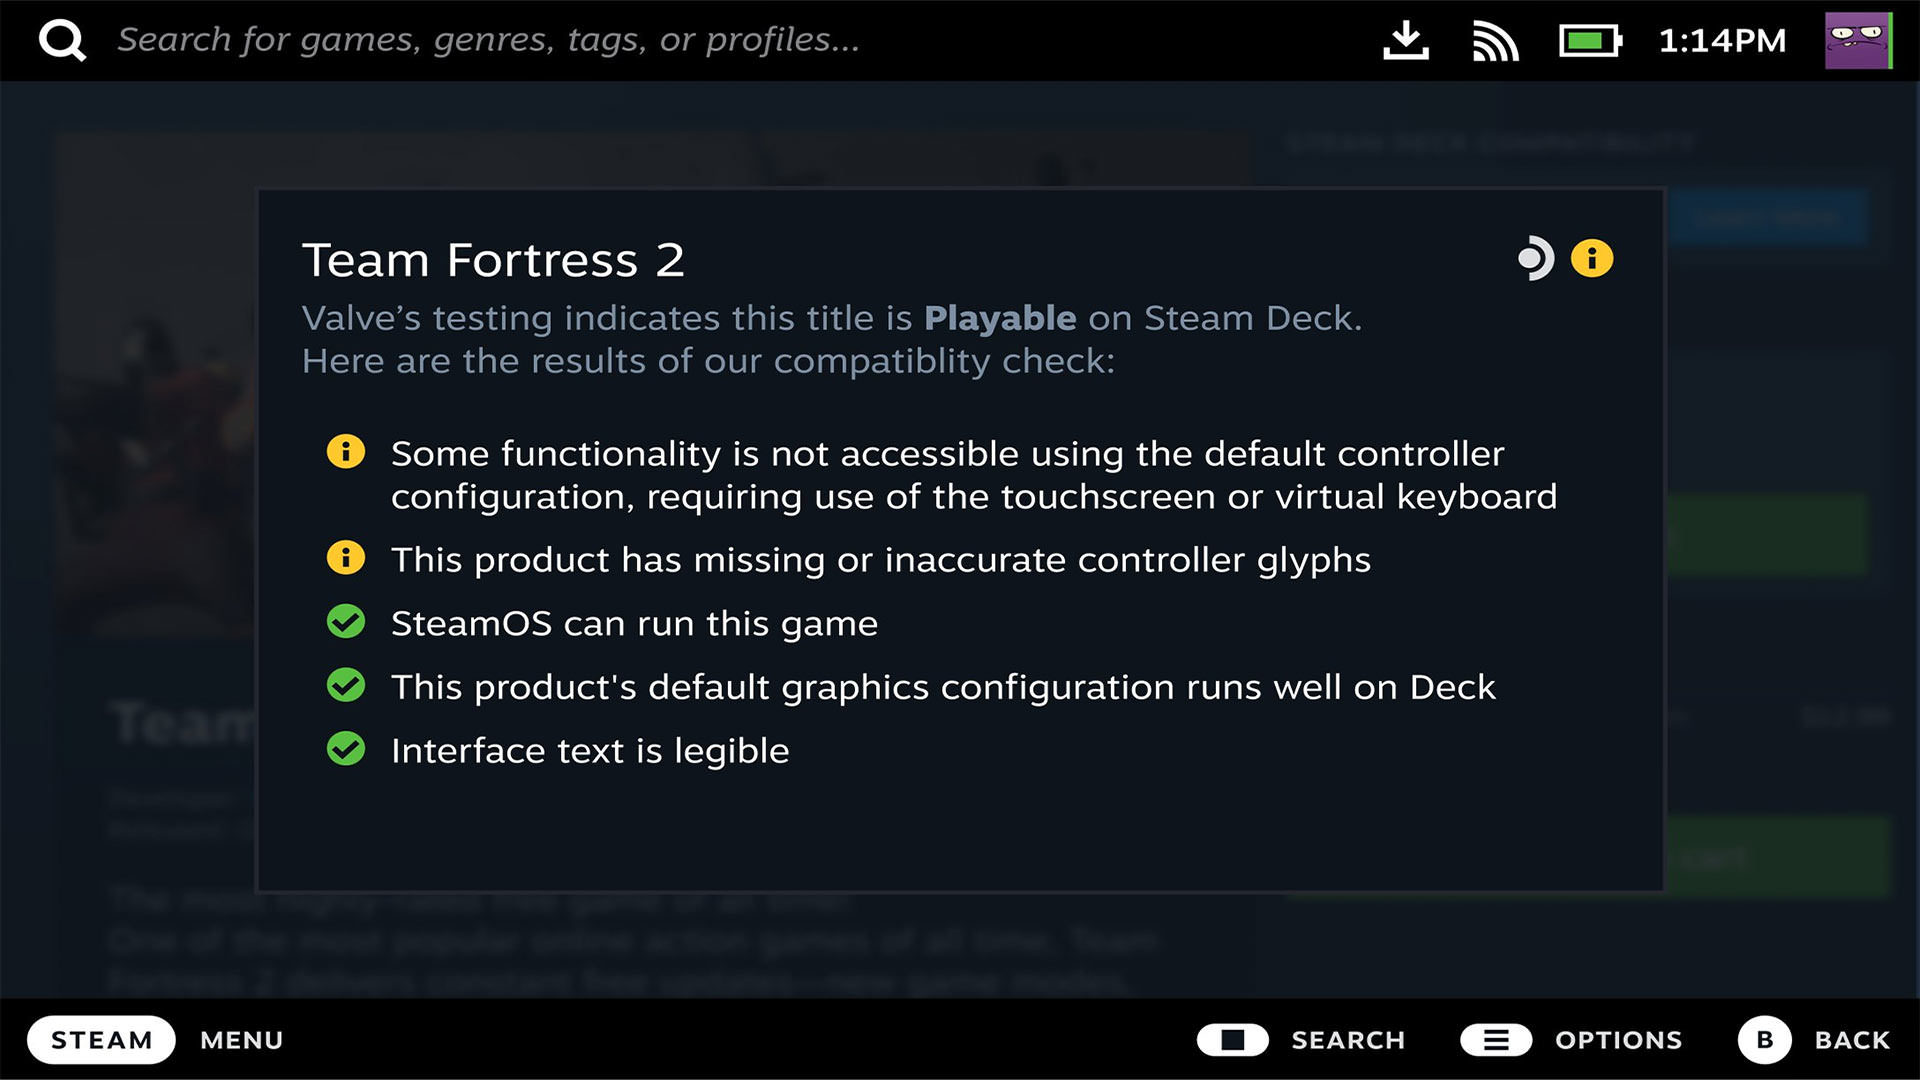 نمایش جزئیات سازگاری بازی Team Fortress 2 با استیم دک